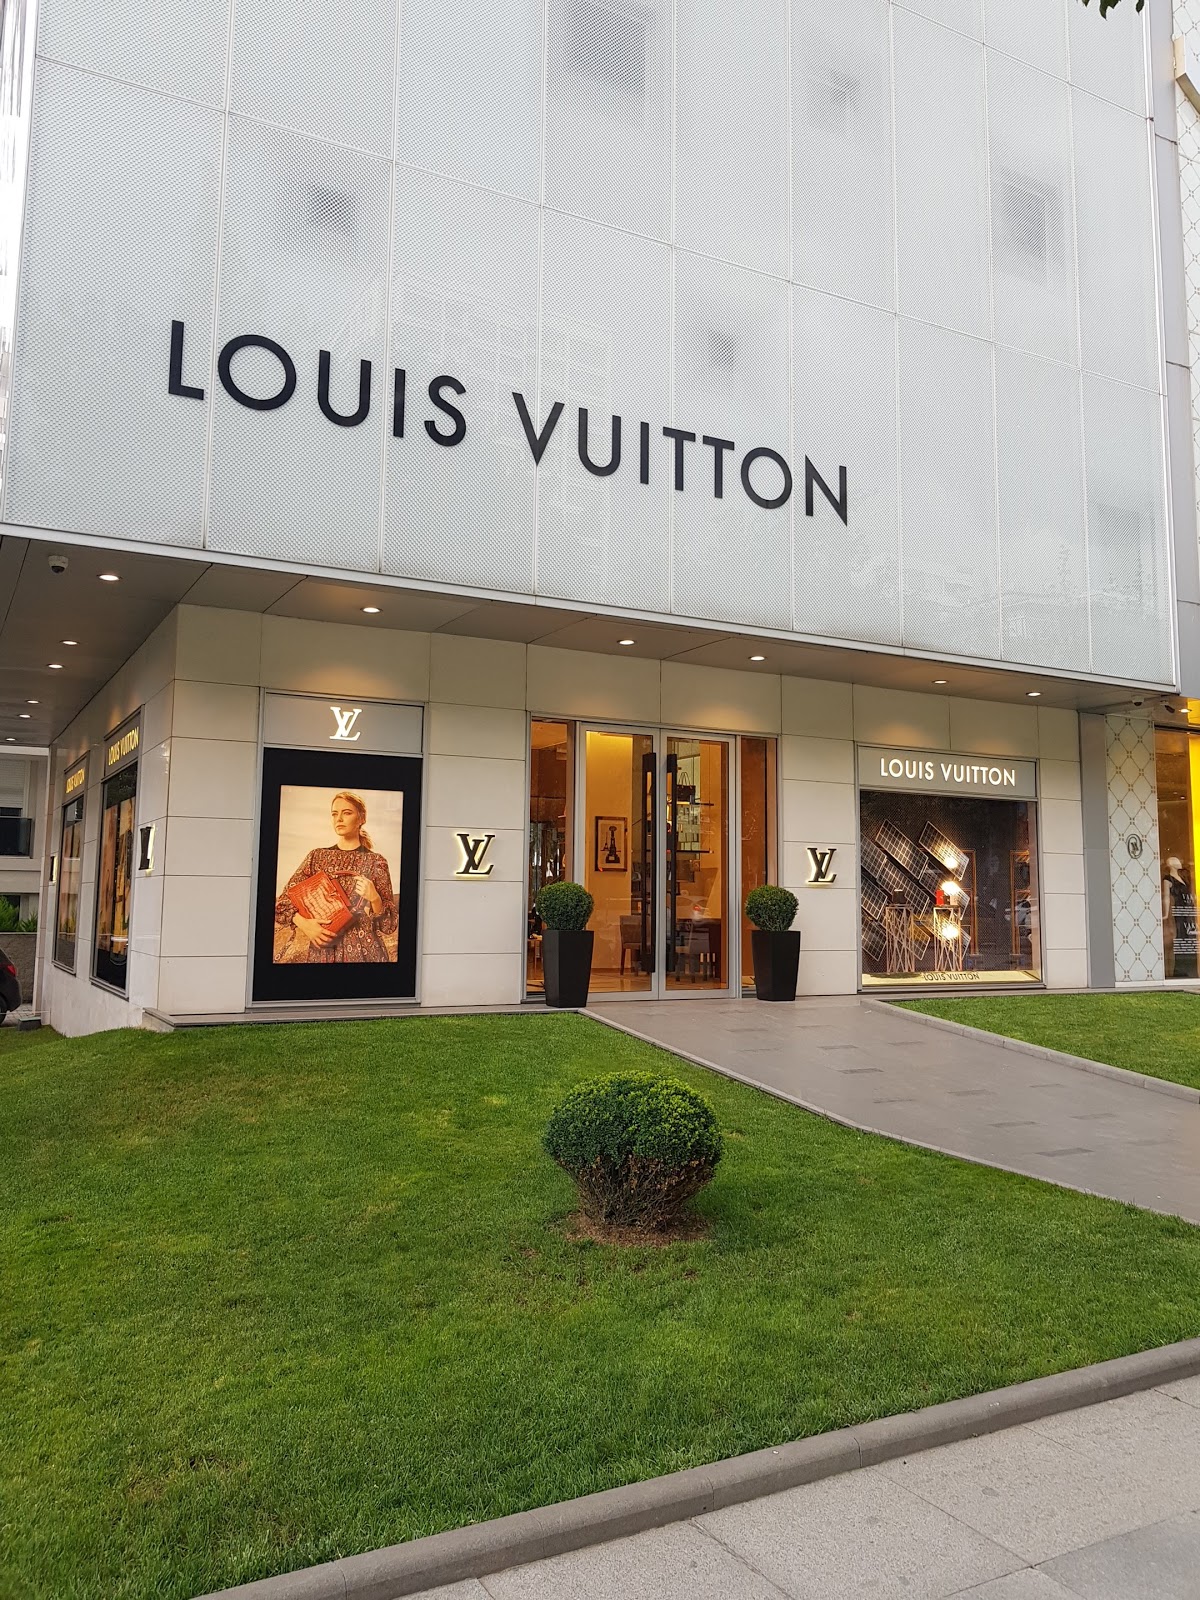 Louis Vuitton - Bukit Bintang - 42 tips